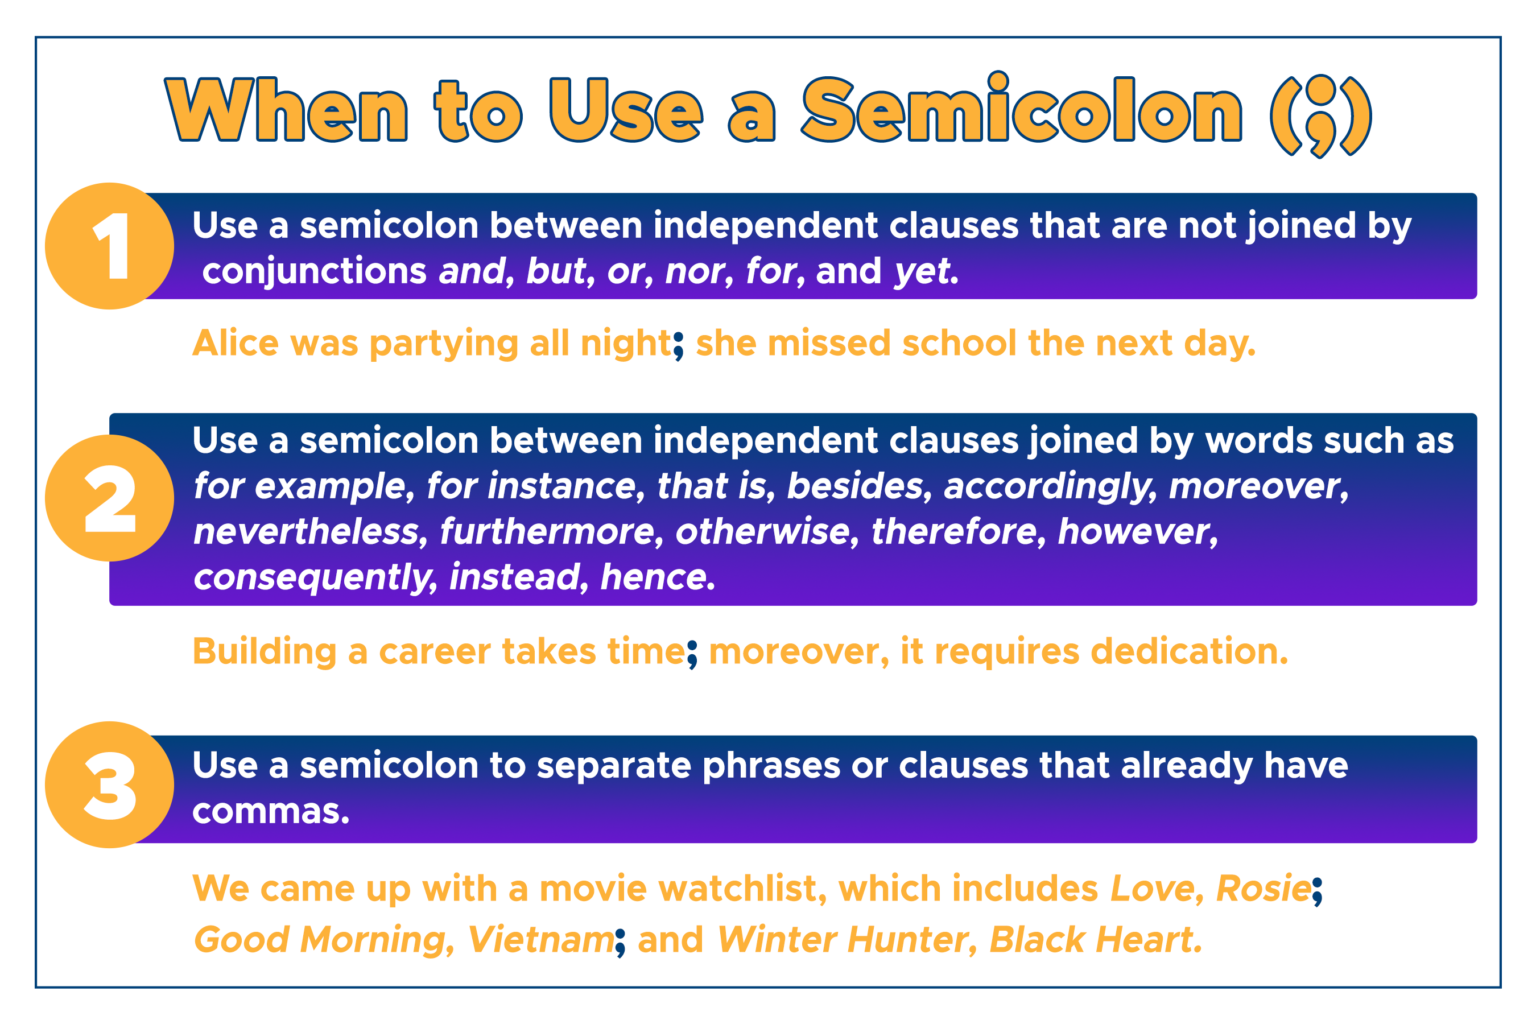 When Do We Use A Semicolon In Compound Sentences